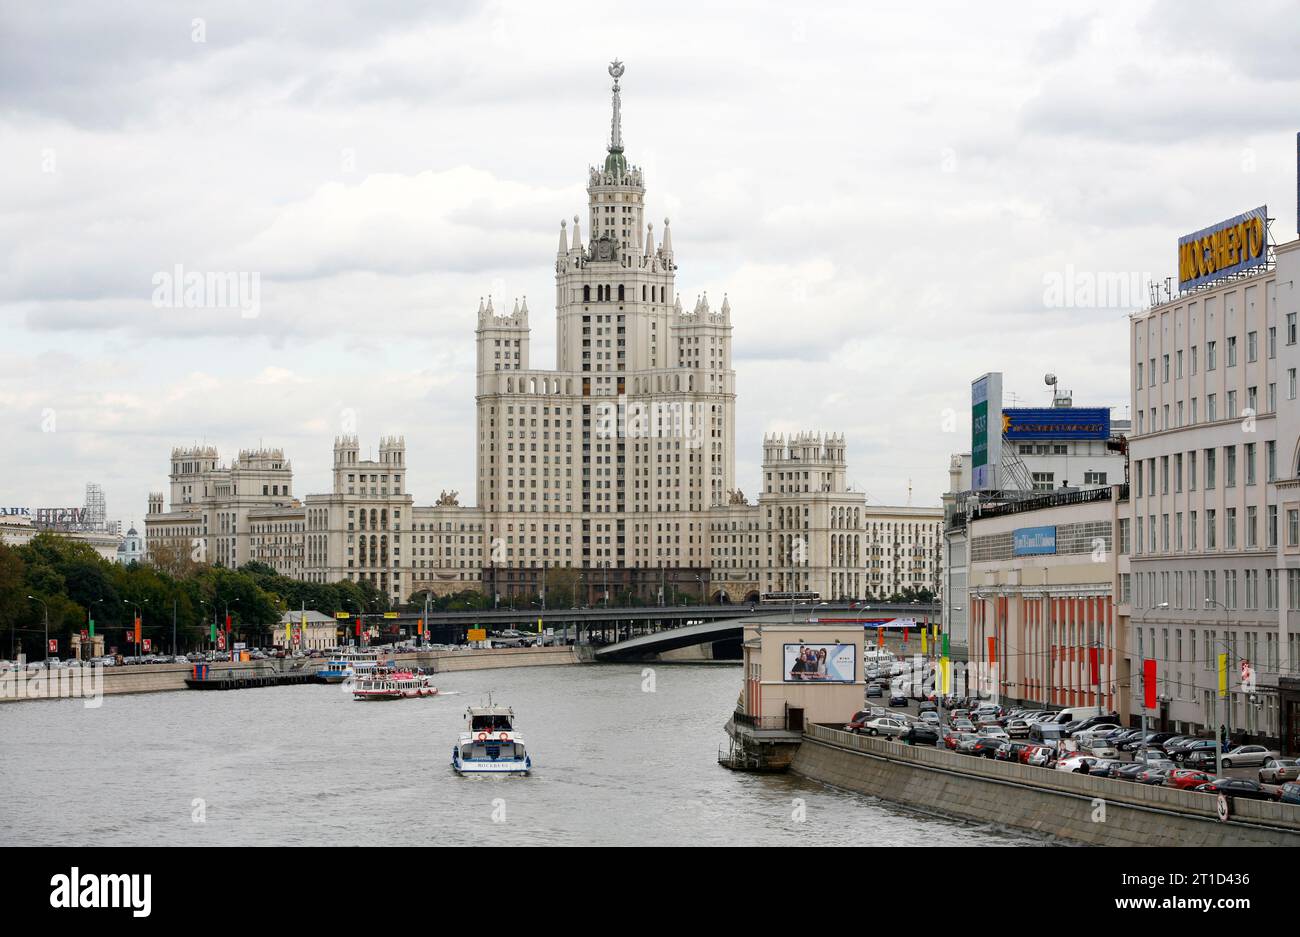 Stalin-Gebäude am Kotelnicheskaya-Damm, eine der sieben Schwestern, die sieben Stalinistische Wolkenkratzer sind, Moskau, Russland. Stockfoto